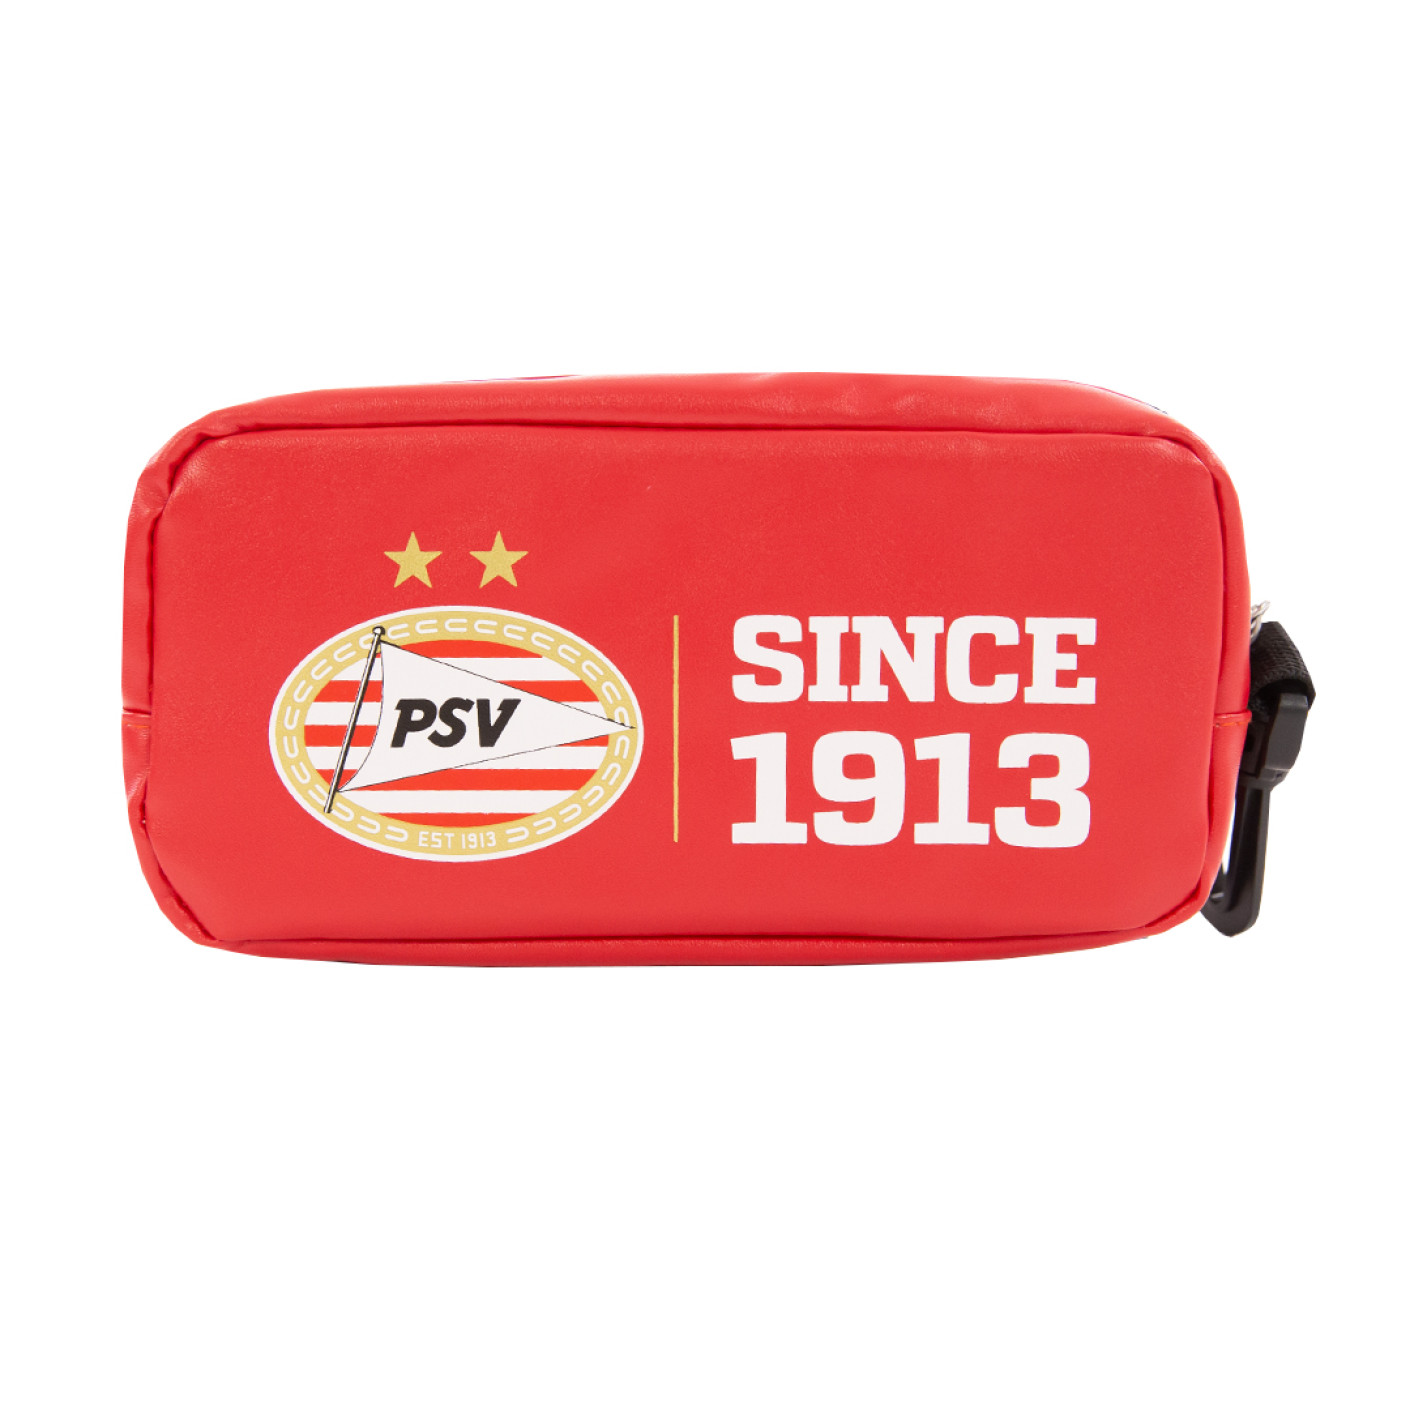 PSV Etui Since 1913